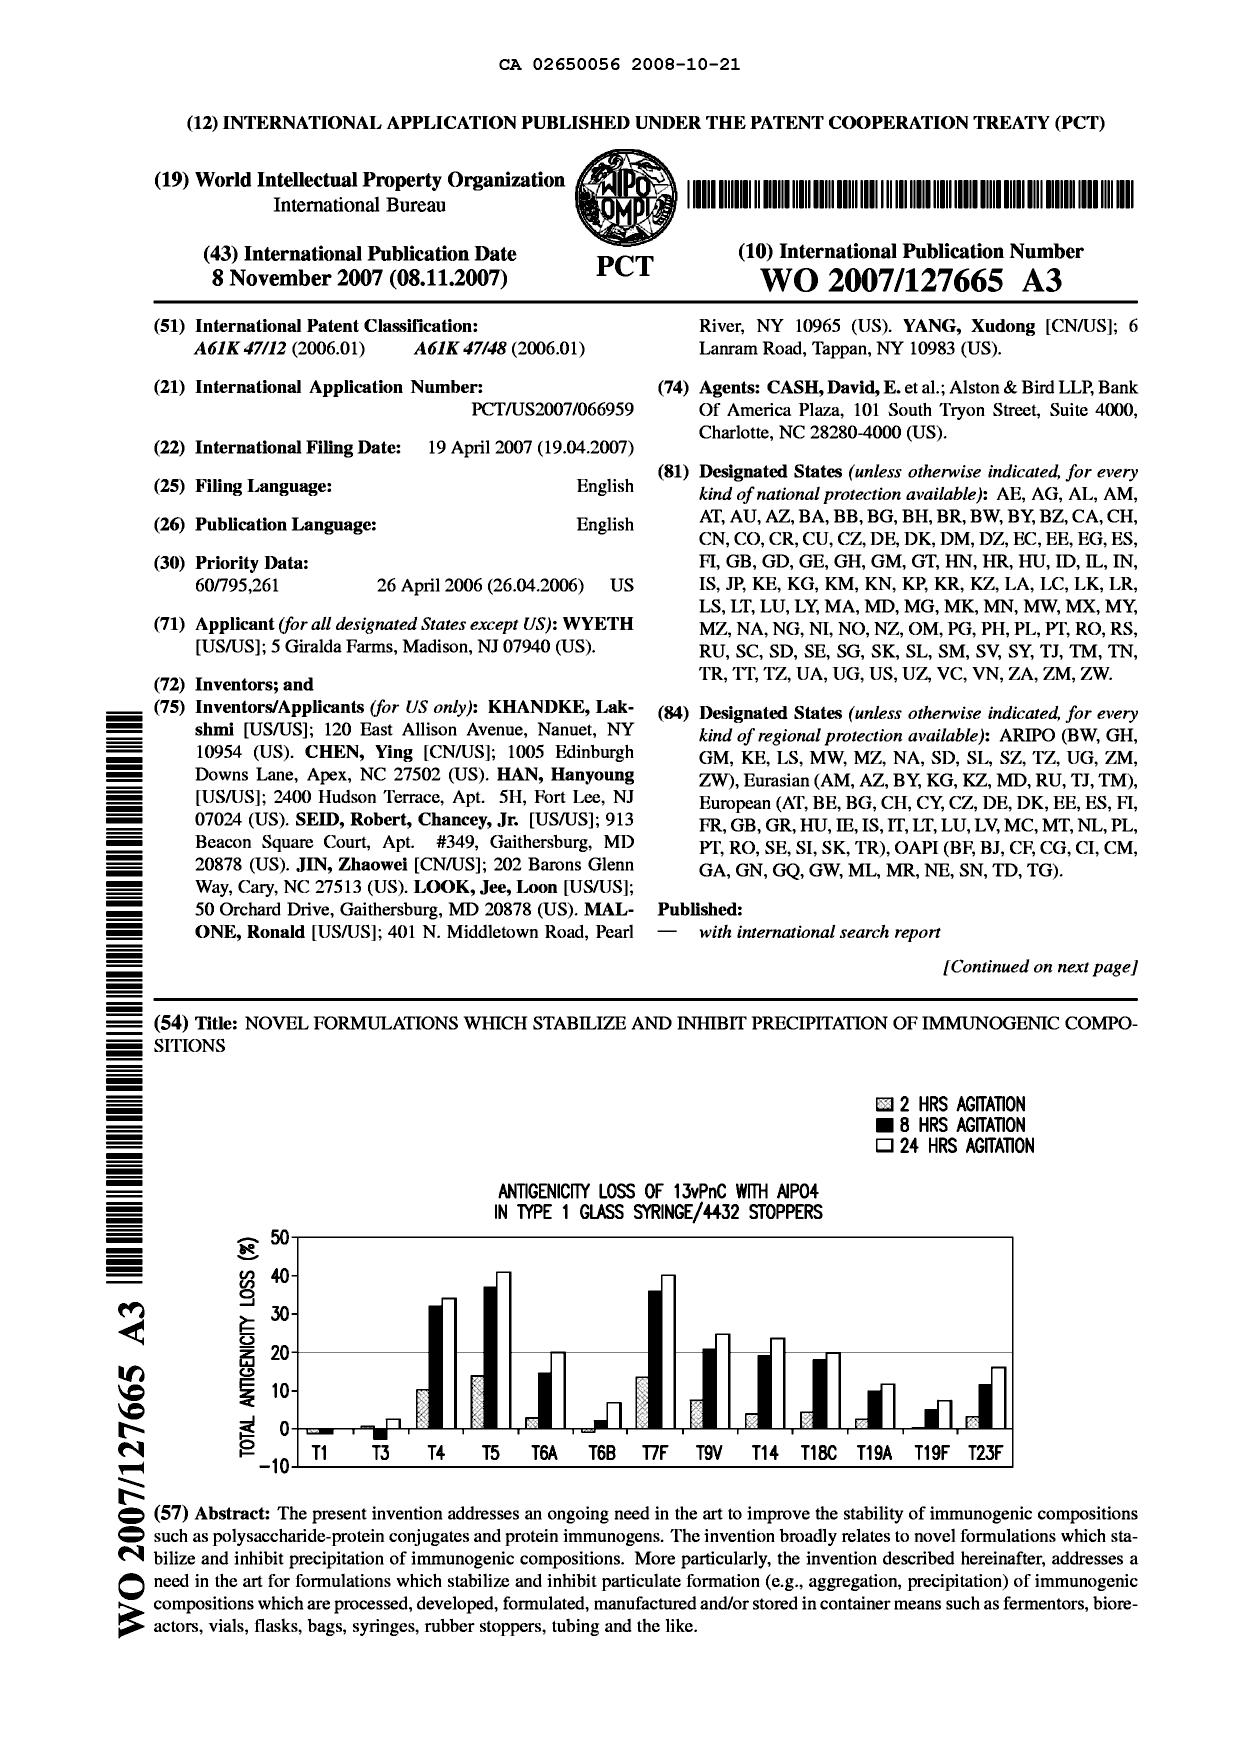 Document de brevet canadien 2650056. Abrégé 20071221. Image 1 de 2